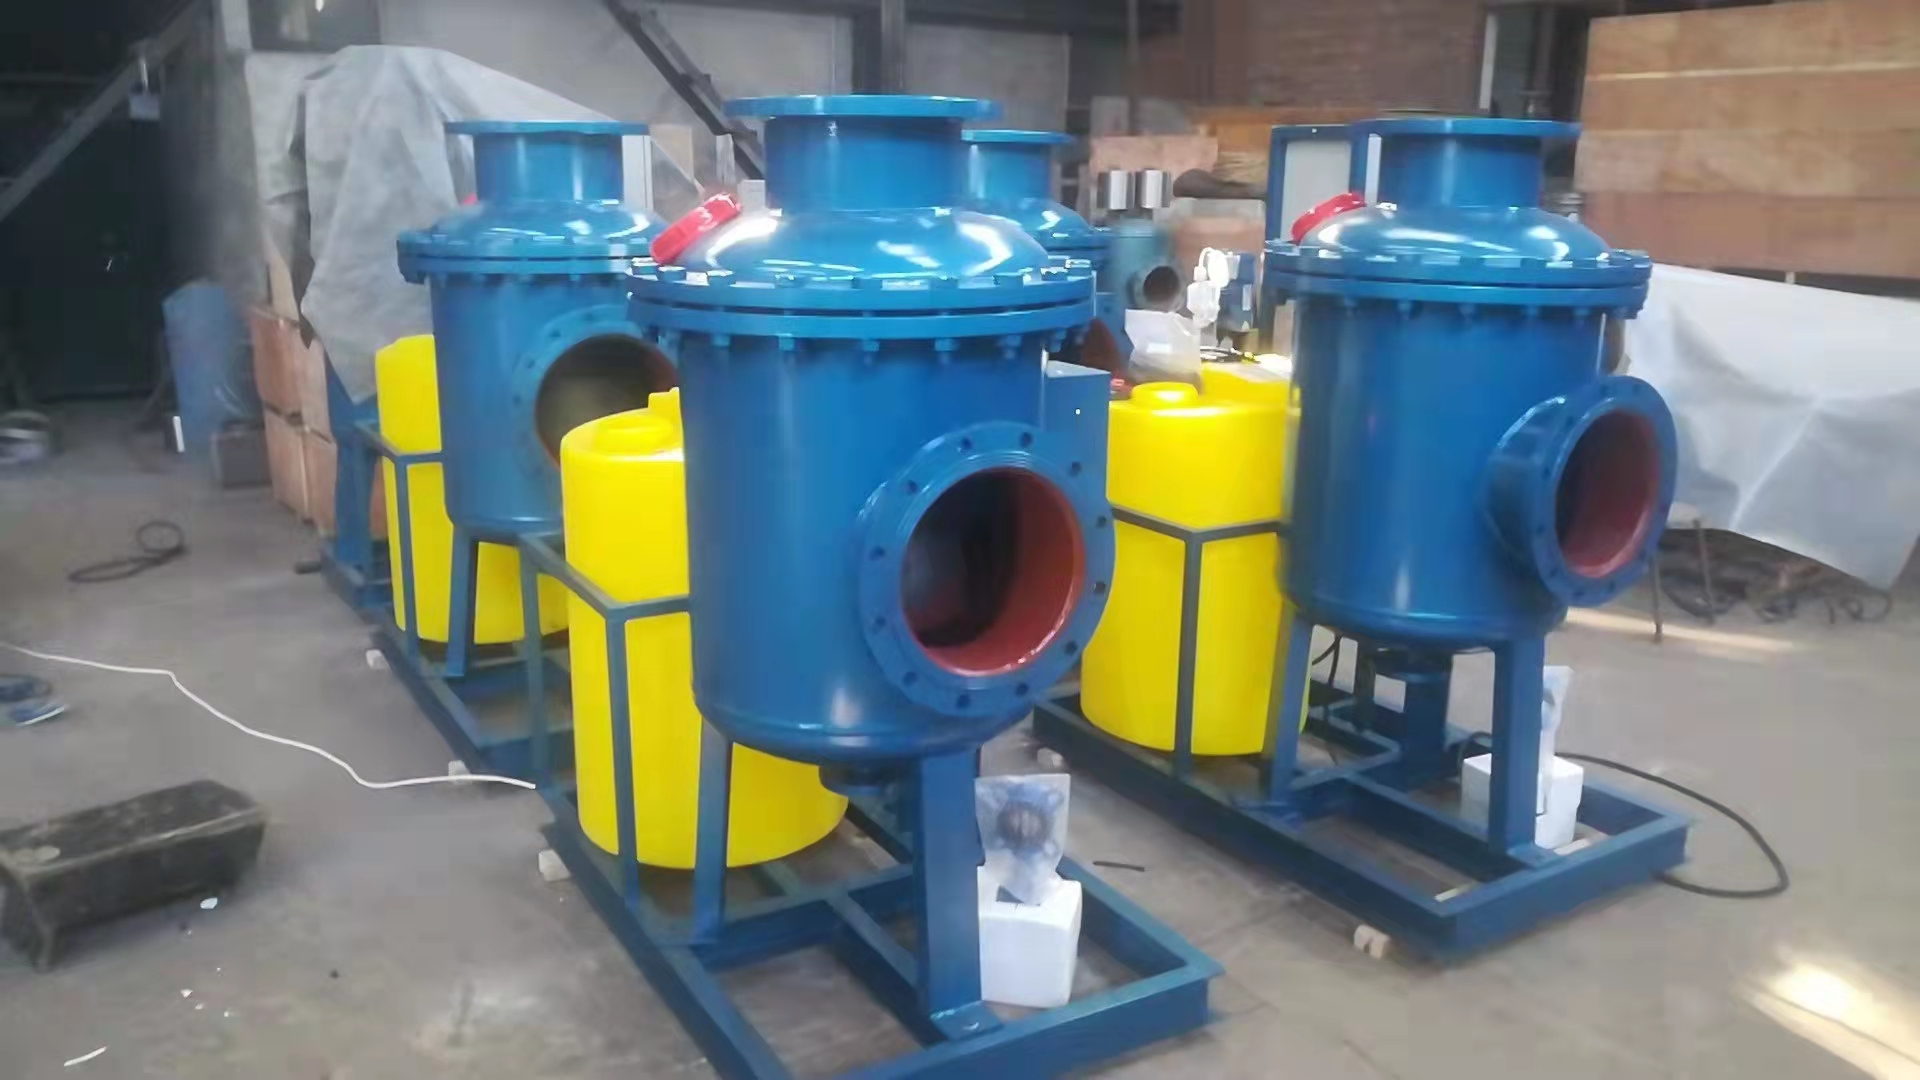 综合物化全程水处理器供应商 全程综合水处理器 物化法全程综合水处理器